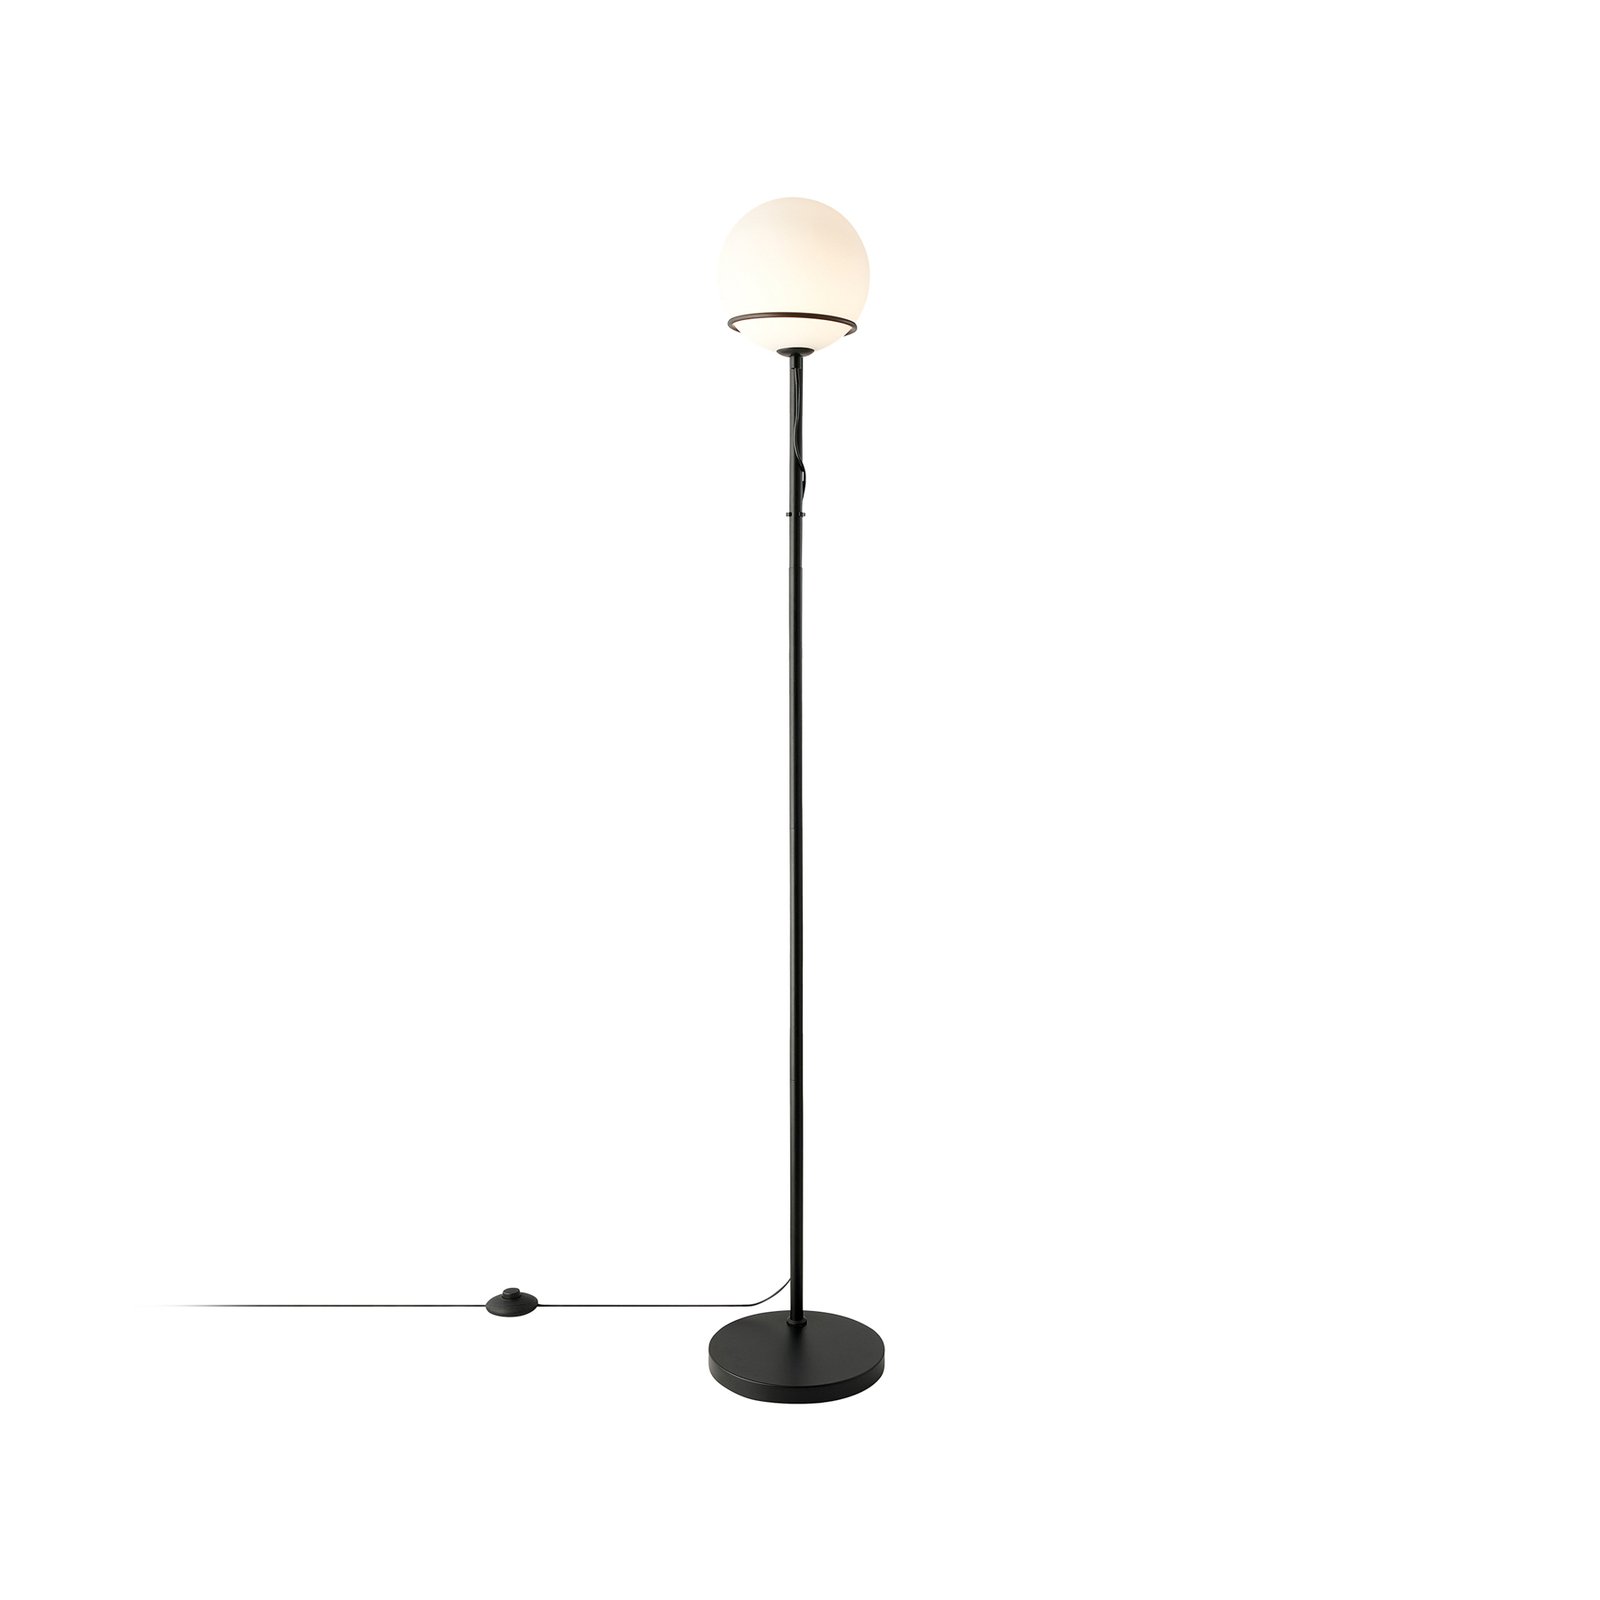 Wilson állólámpa, fém, fekete, üveg ernyővel